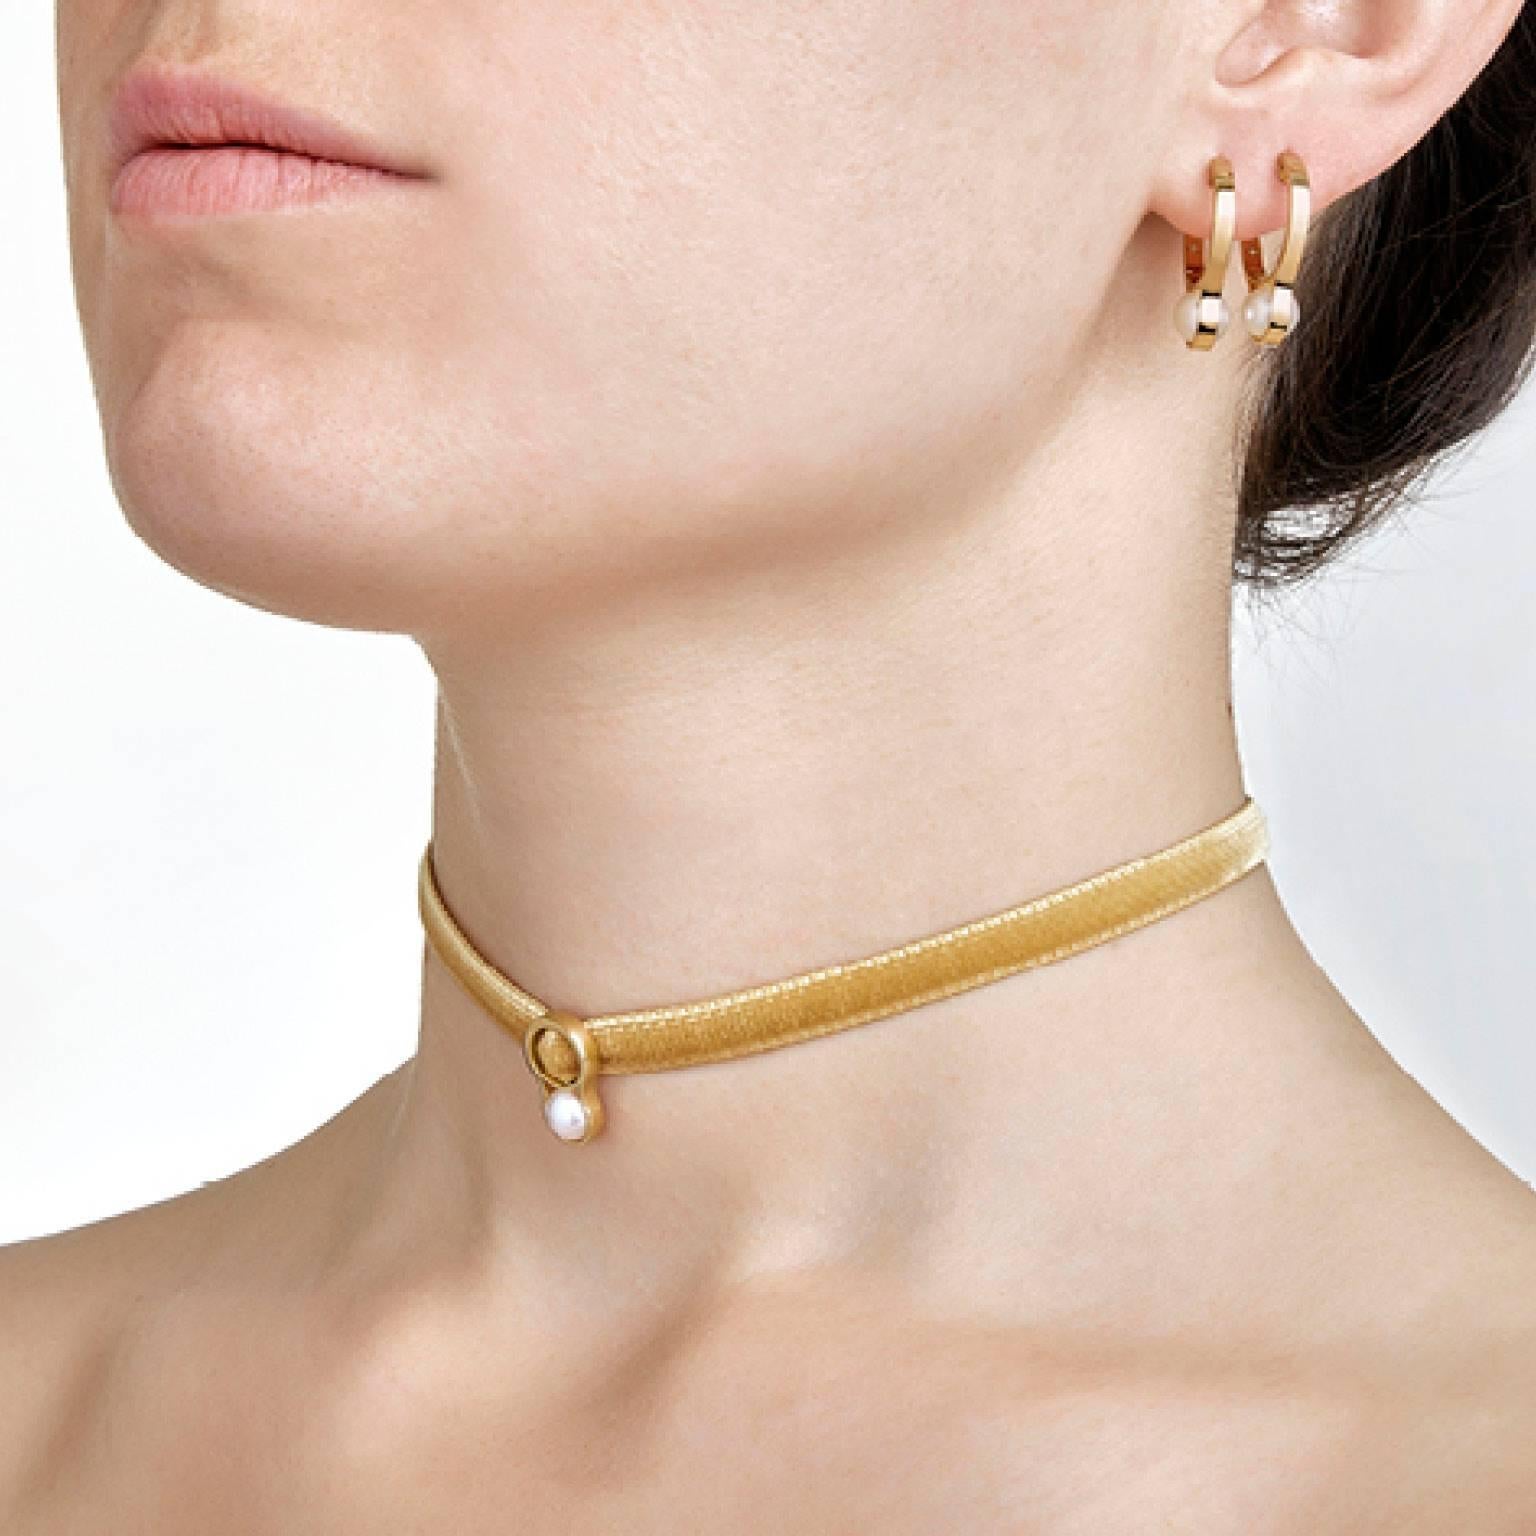 Das im Atelier von Nathalie Jean von Hand gefertigte Halsband Nakkar ist eine Hommage an die Perle, ein Symbol der Göttlichkeit, des Königtums und des Luxus, das seit Anbeginn der Zeit fasziniert und inspiriert. Ein schlichtes Band aus 18-karätigem